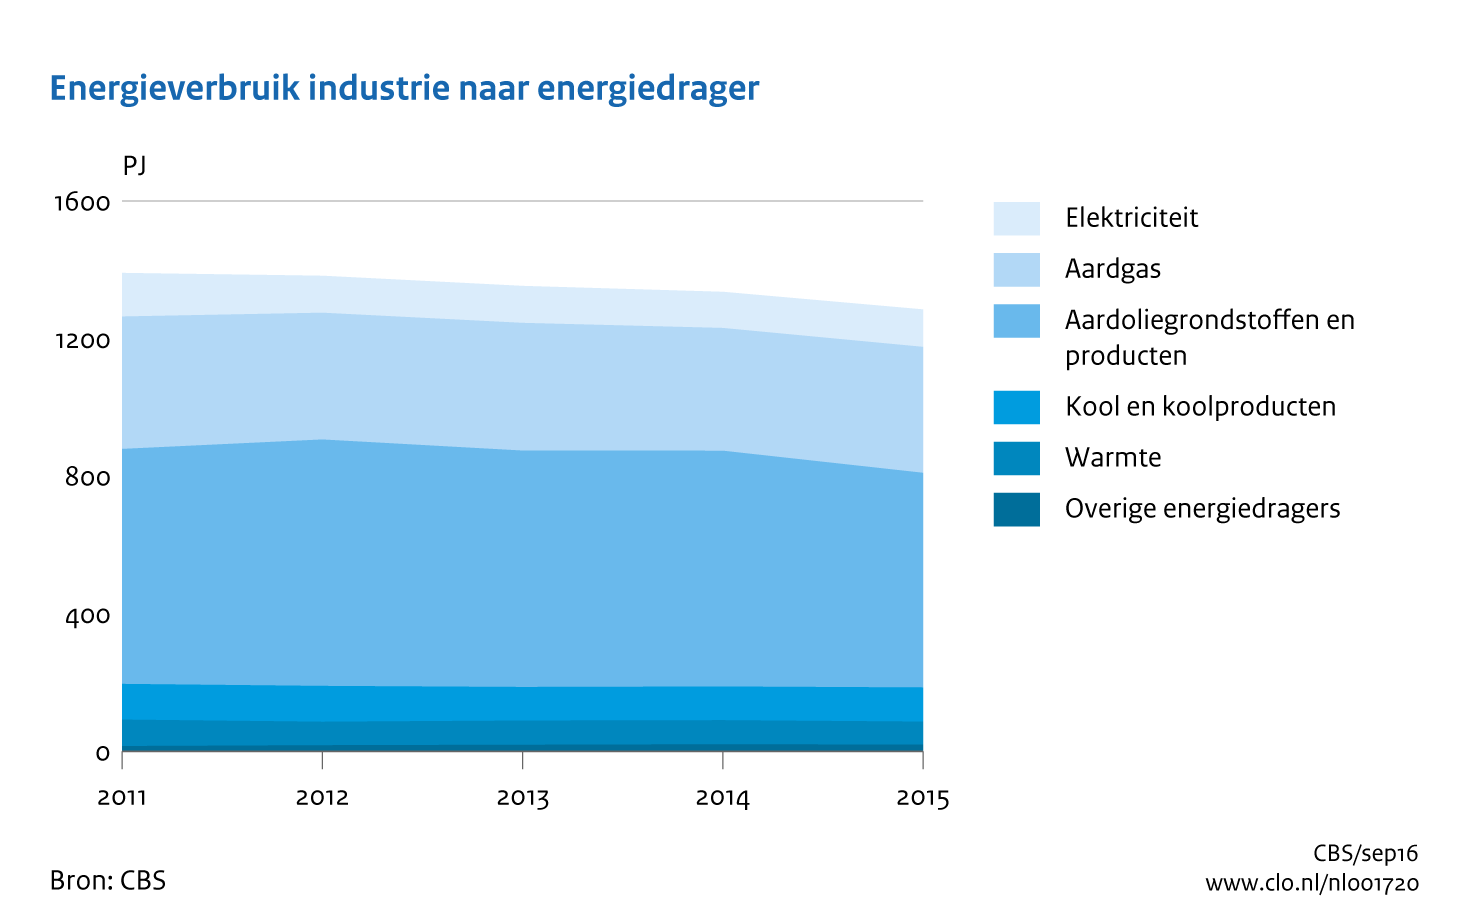 Figuur Energieverbruik industrie naar energiedrager 2011-2015. In de rest van de tekst wordt deze figuur uitgebreider uitgelegd.